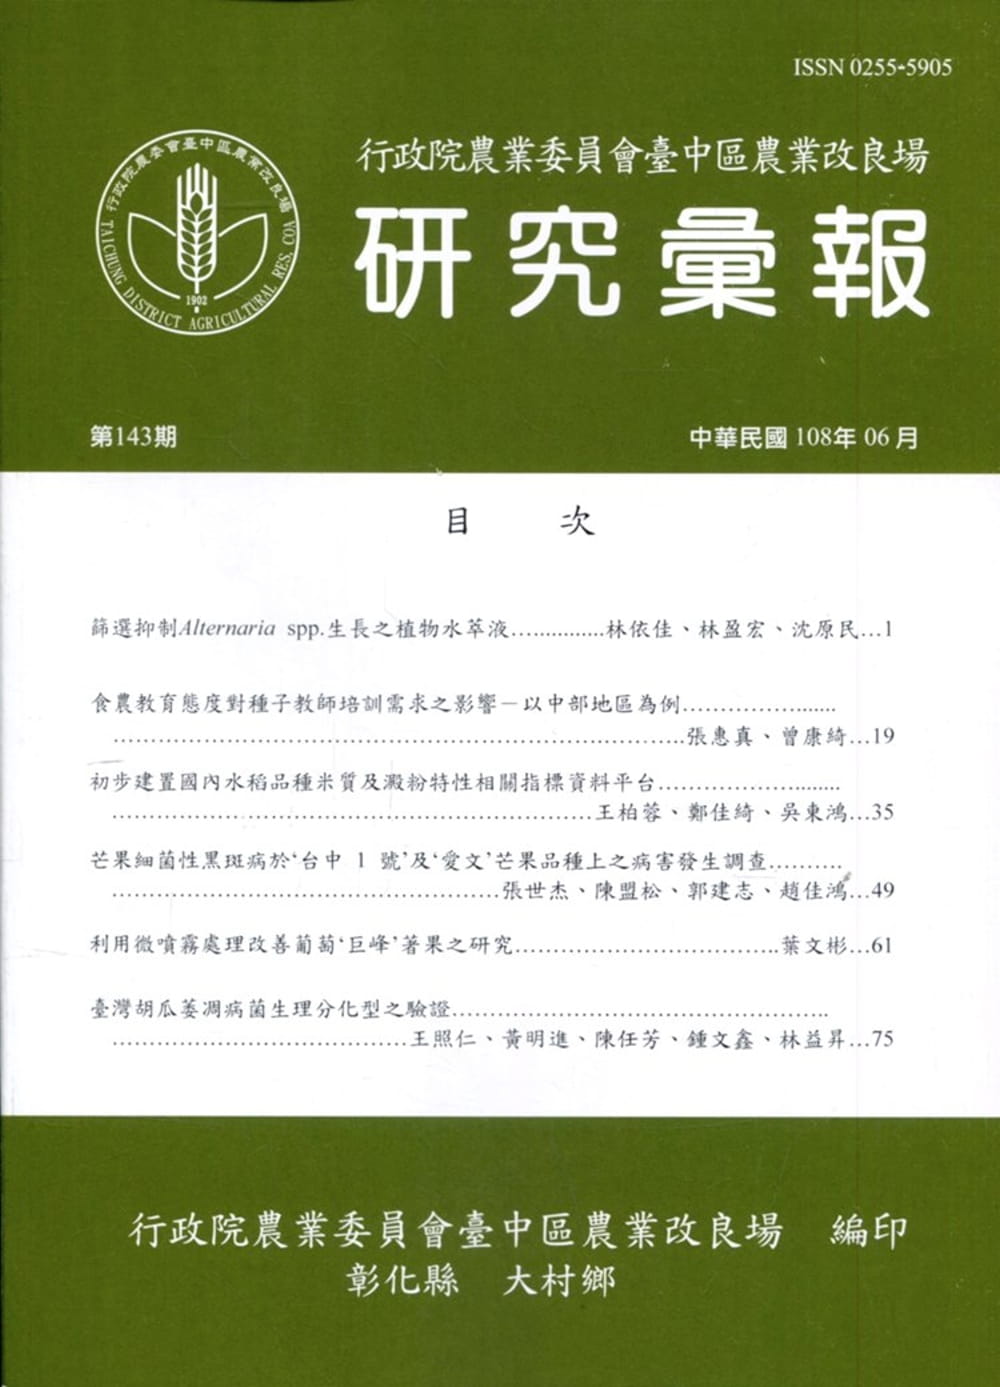 研究彙報143期(108/06)行政院農業委員會臺中區農業改良場